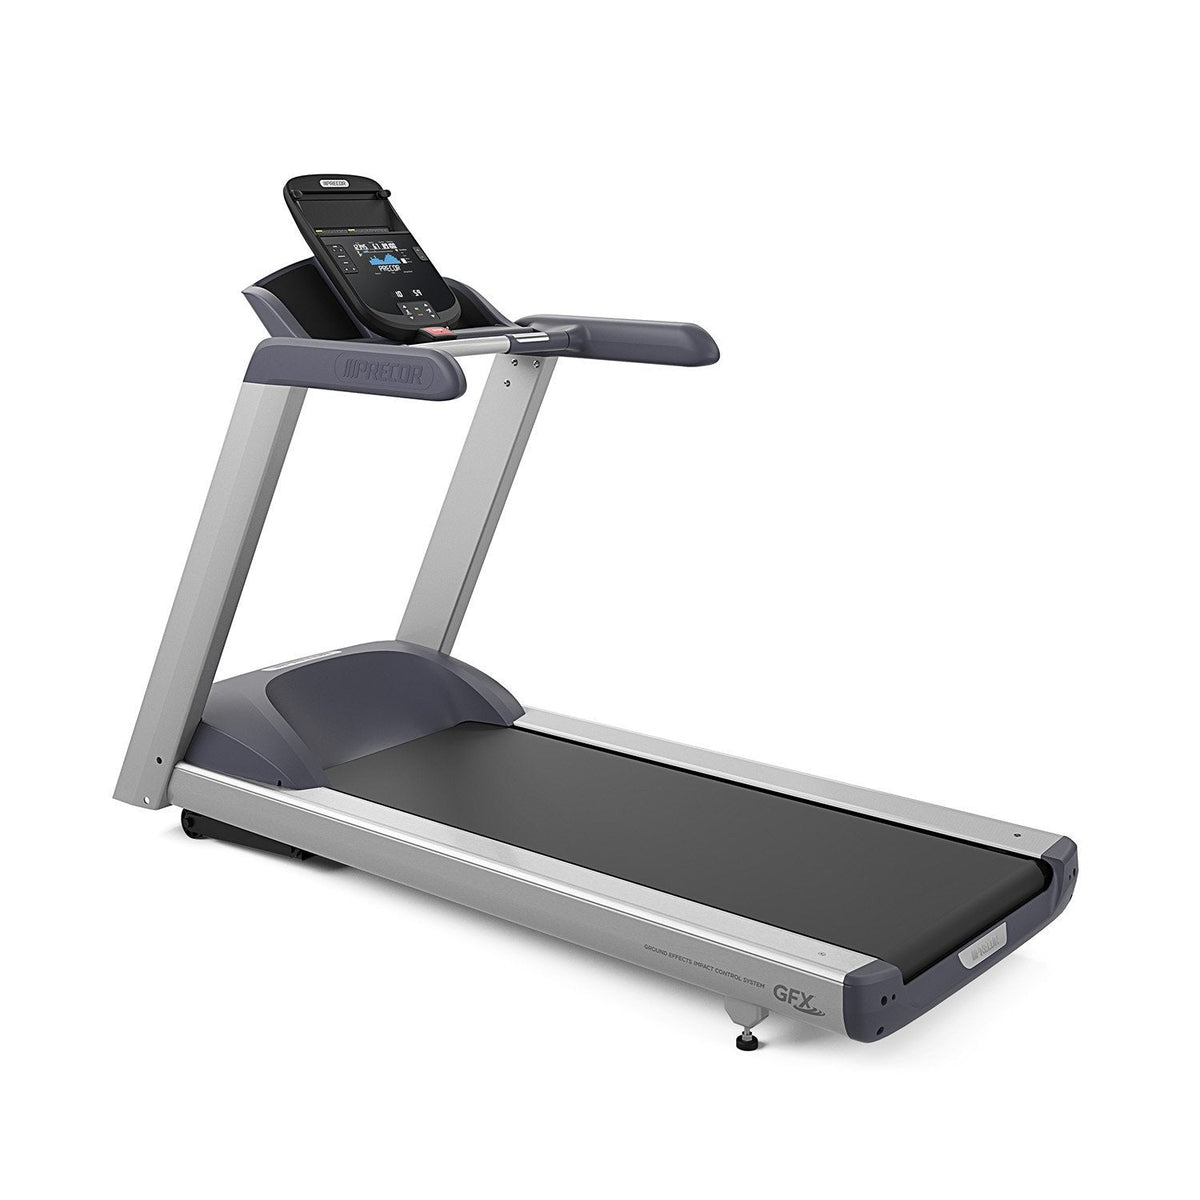 Precor TRM425 Treadmill